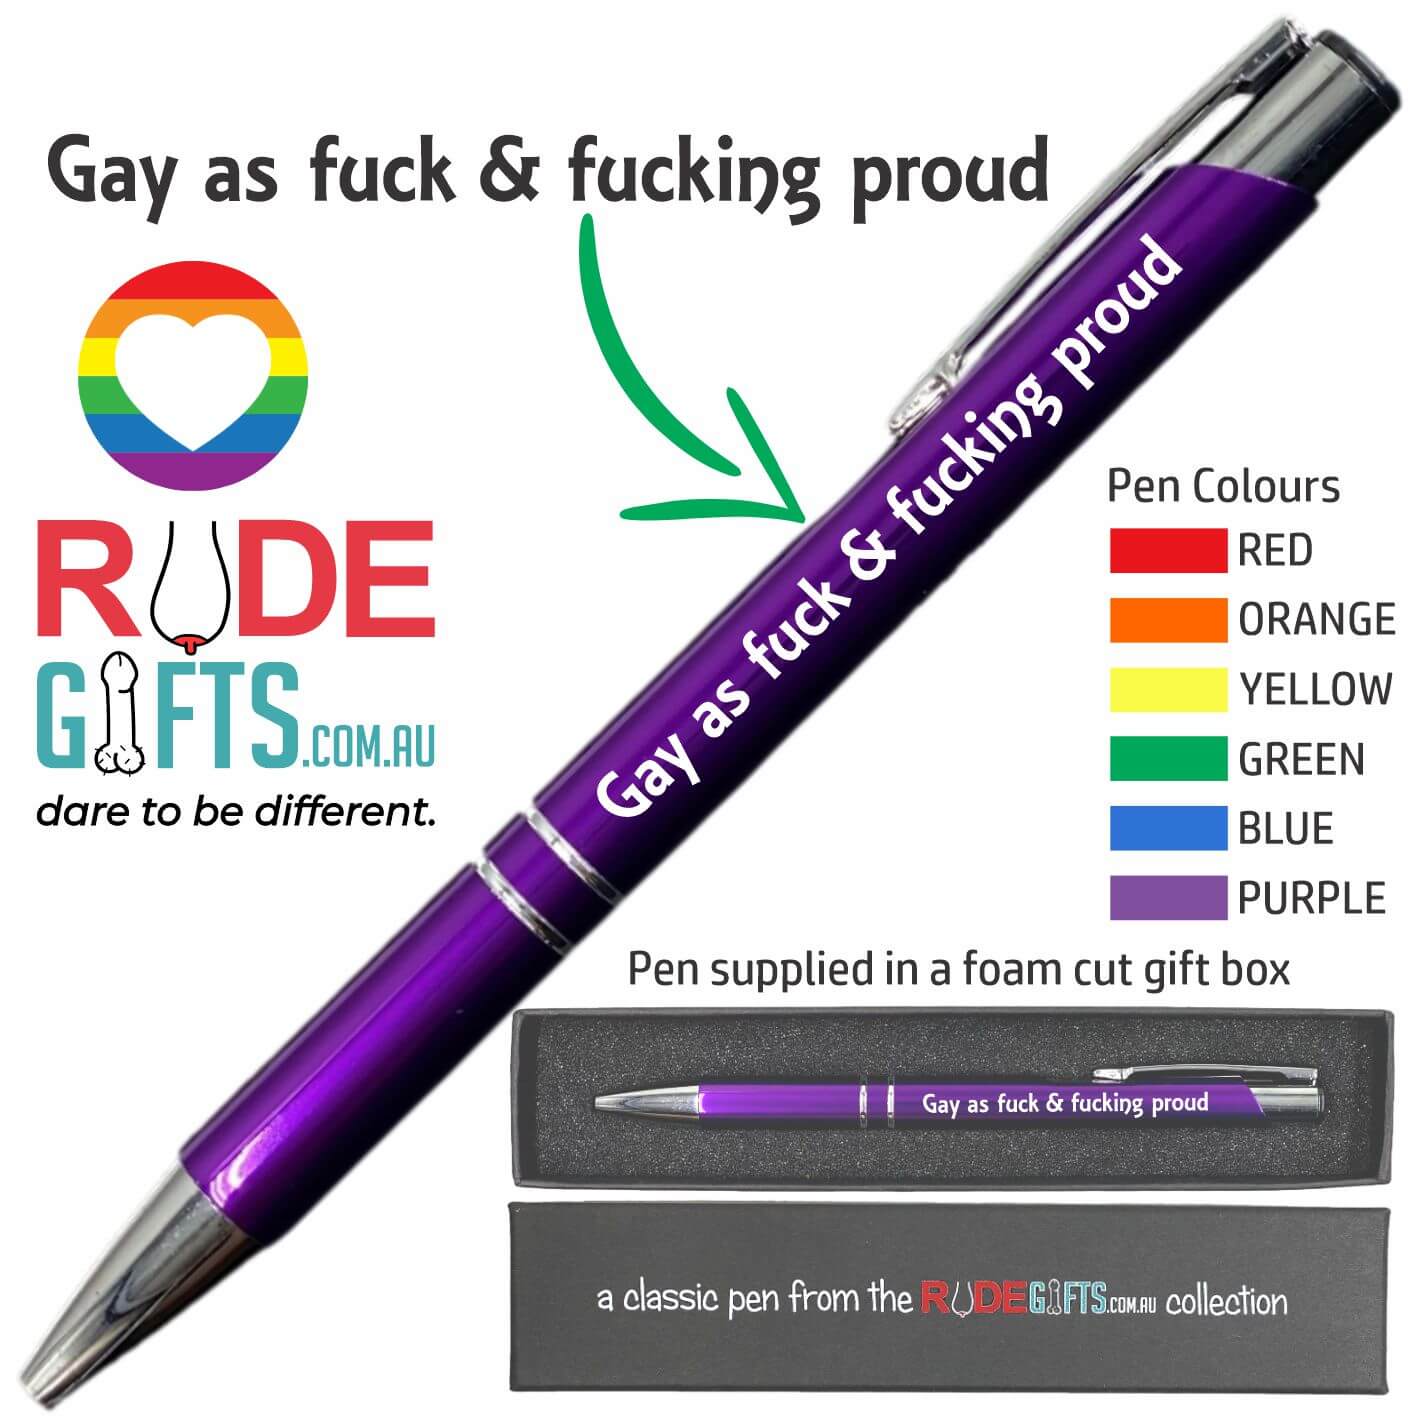 Gay as fuck & fucking proud